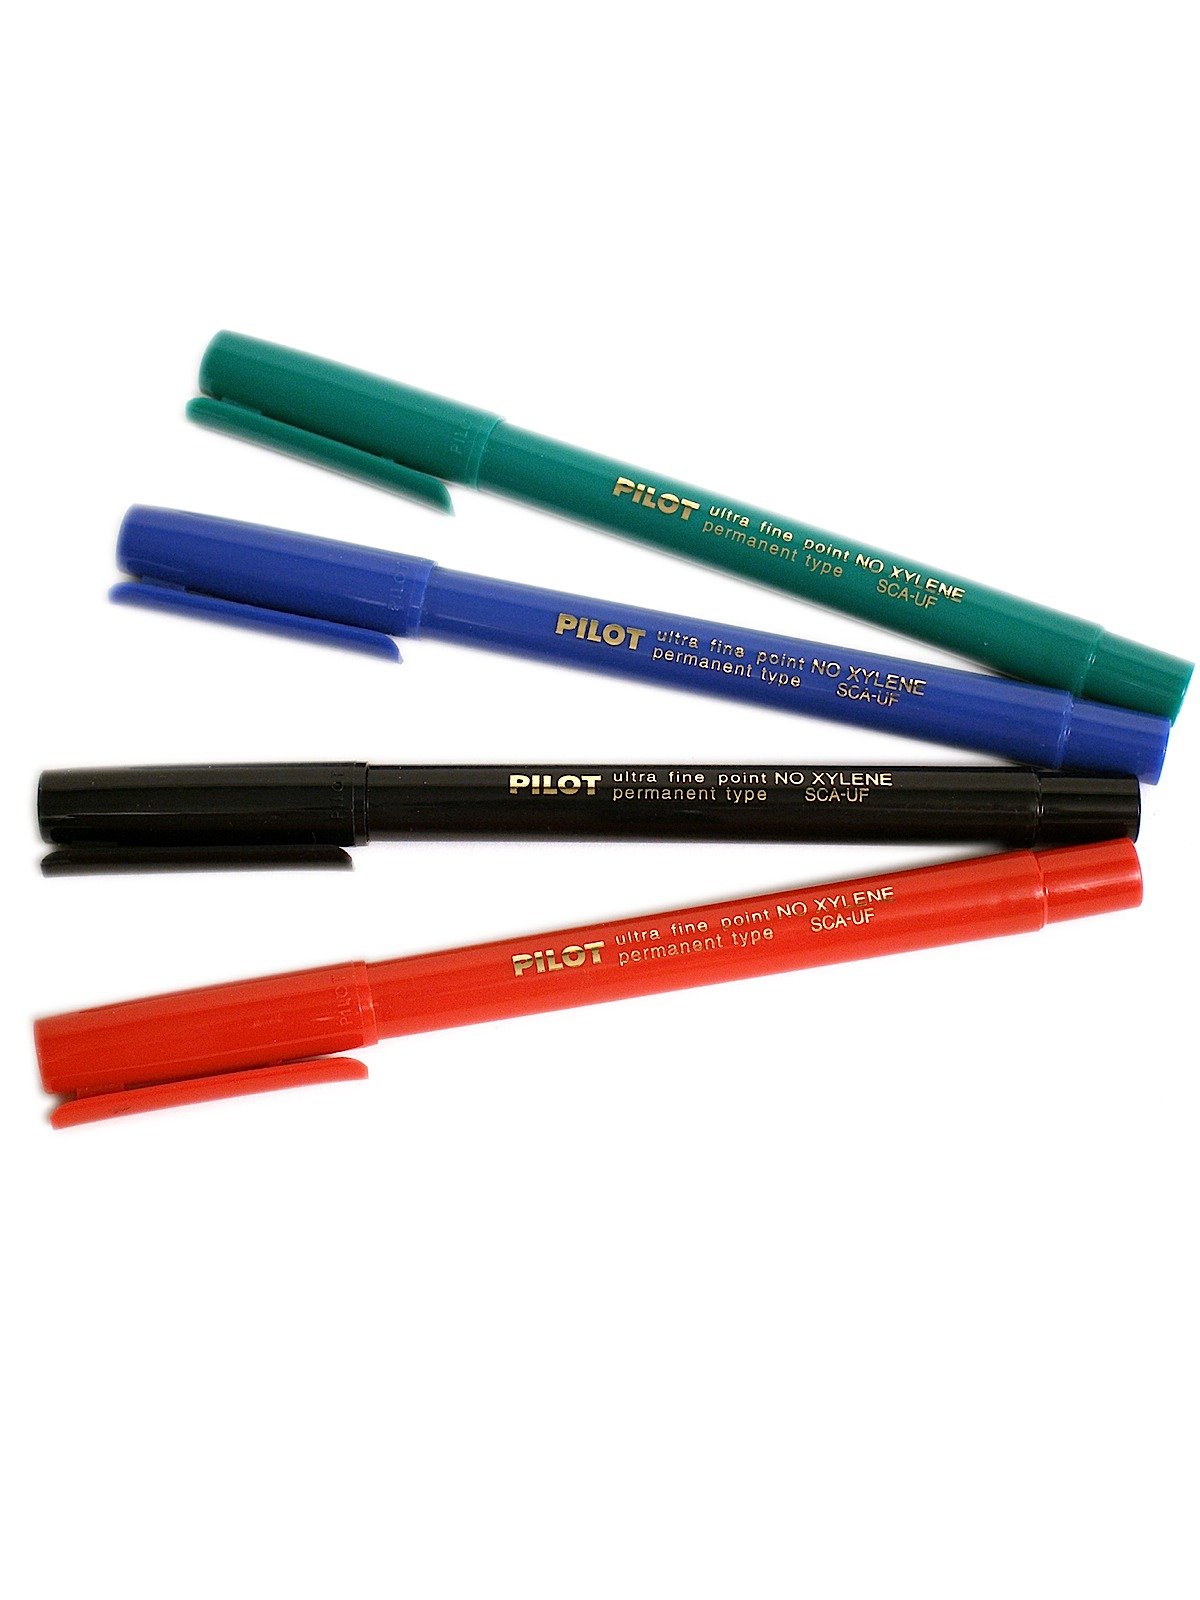 Capped Pilot Extra Fine Point Permanent Pen Marker Choose Color & Quantity 